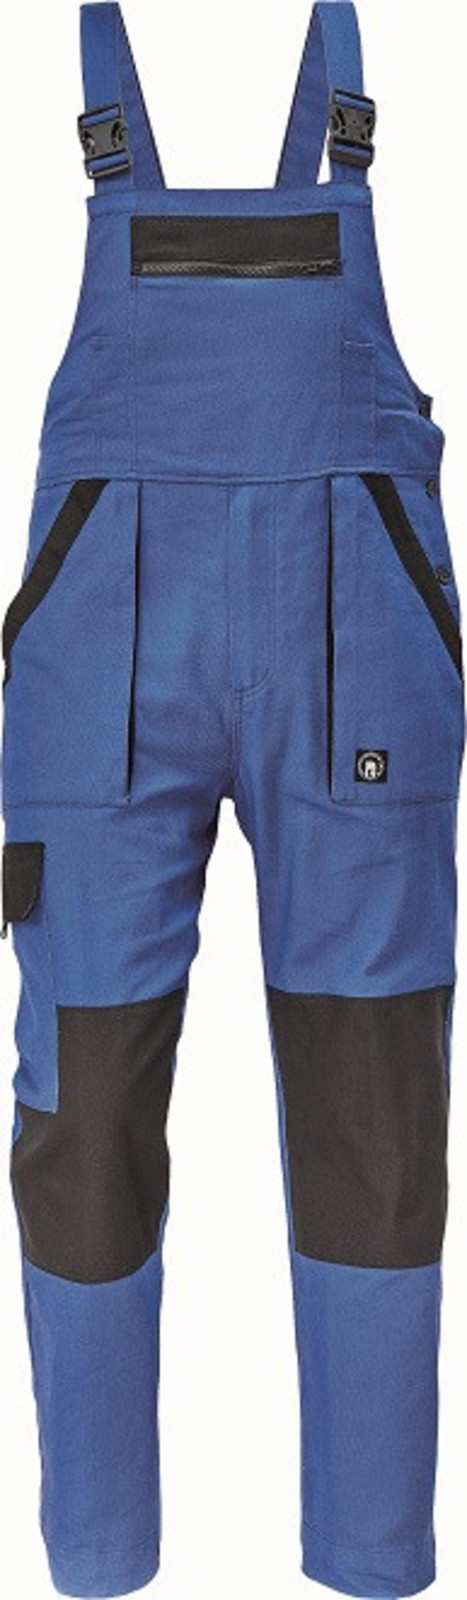 Bavlnené montérky na traky Cerva Max Neo pánske - veľkosť: 48, farba: modrá